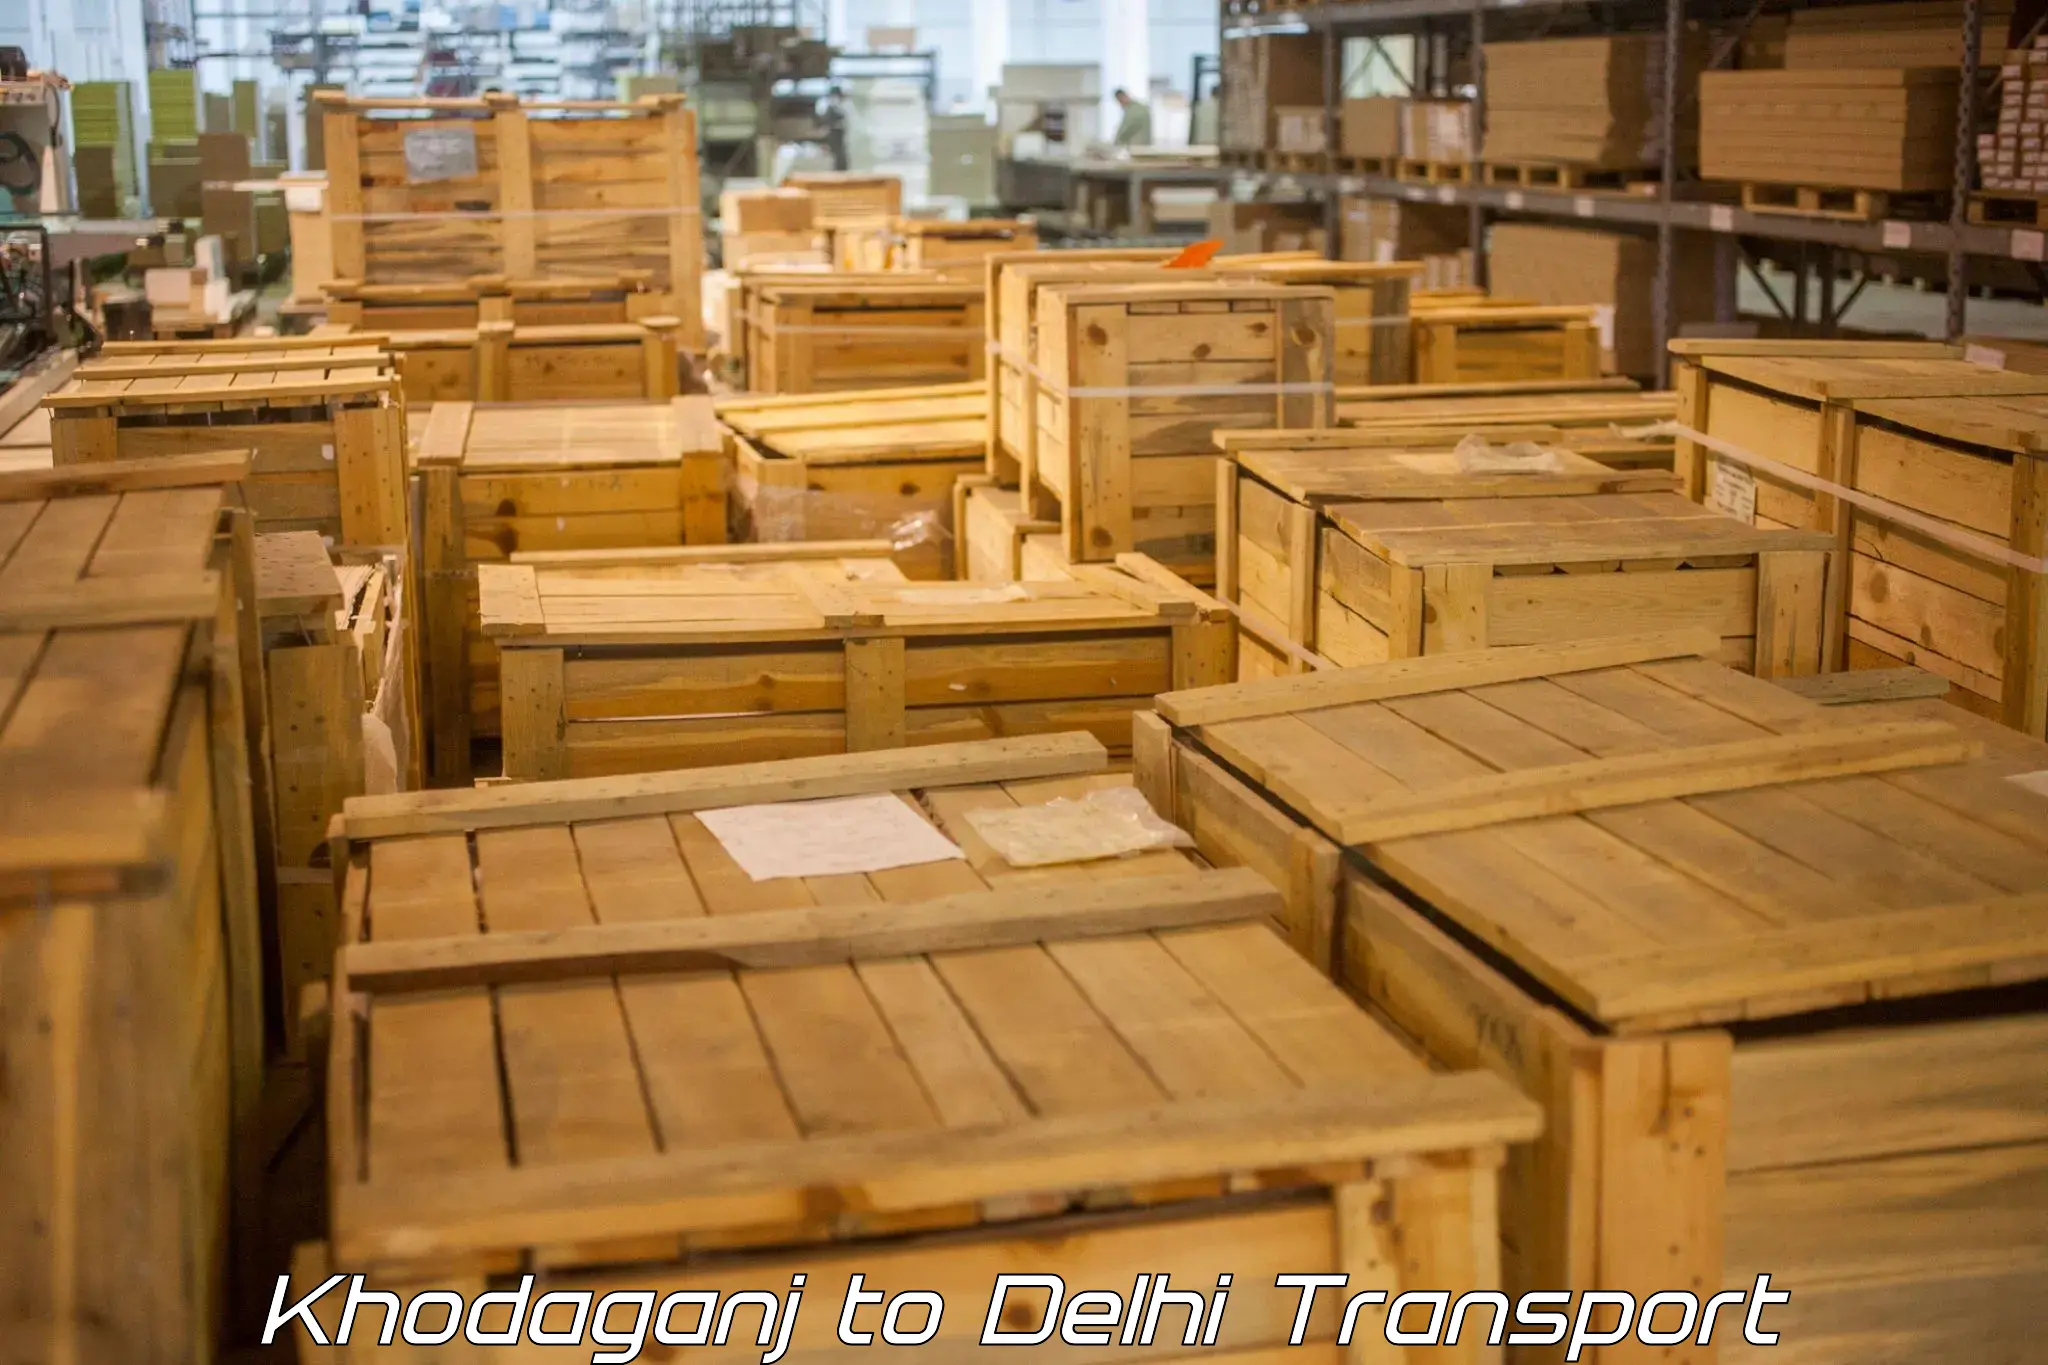 India truck logistics services Khodaganj to Delhi